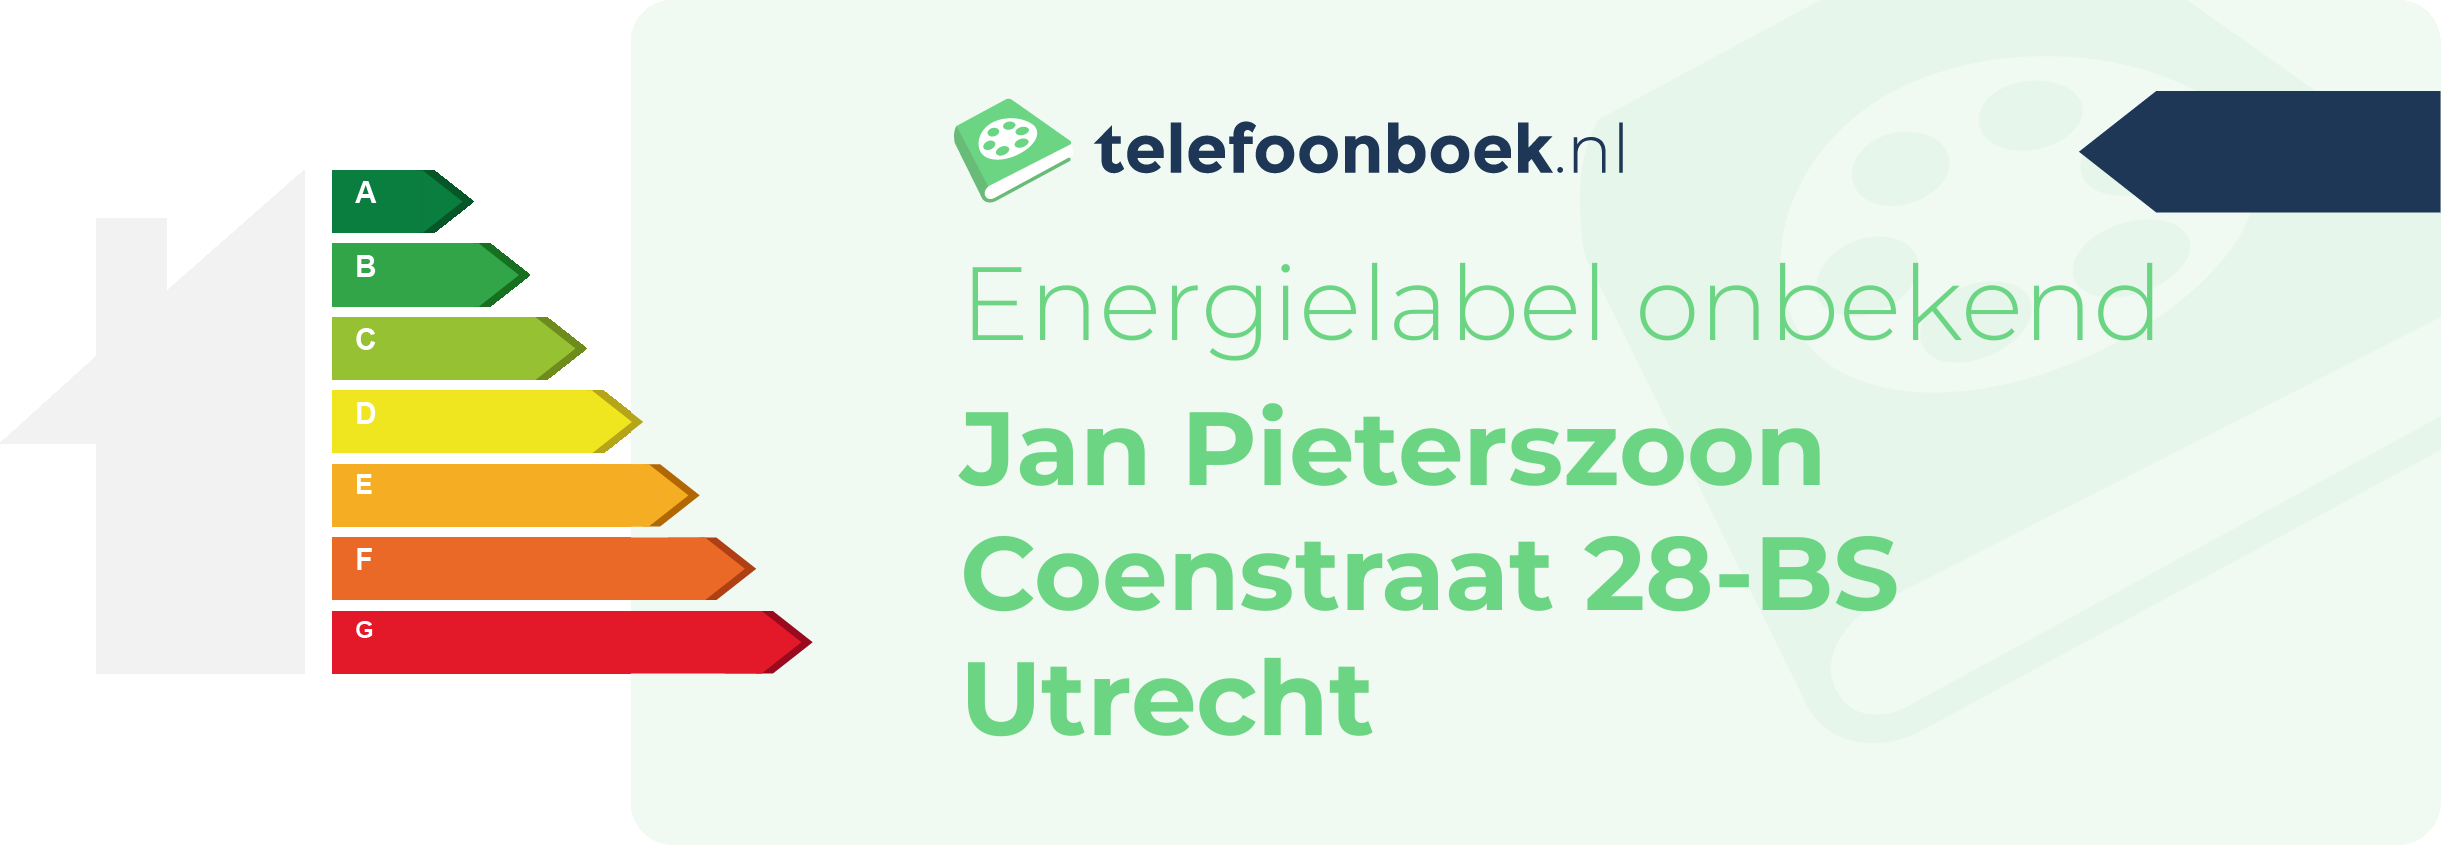 Energielabel Jan Pieterszoon Coenstraat 28-BS Utrecht